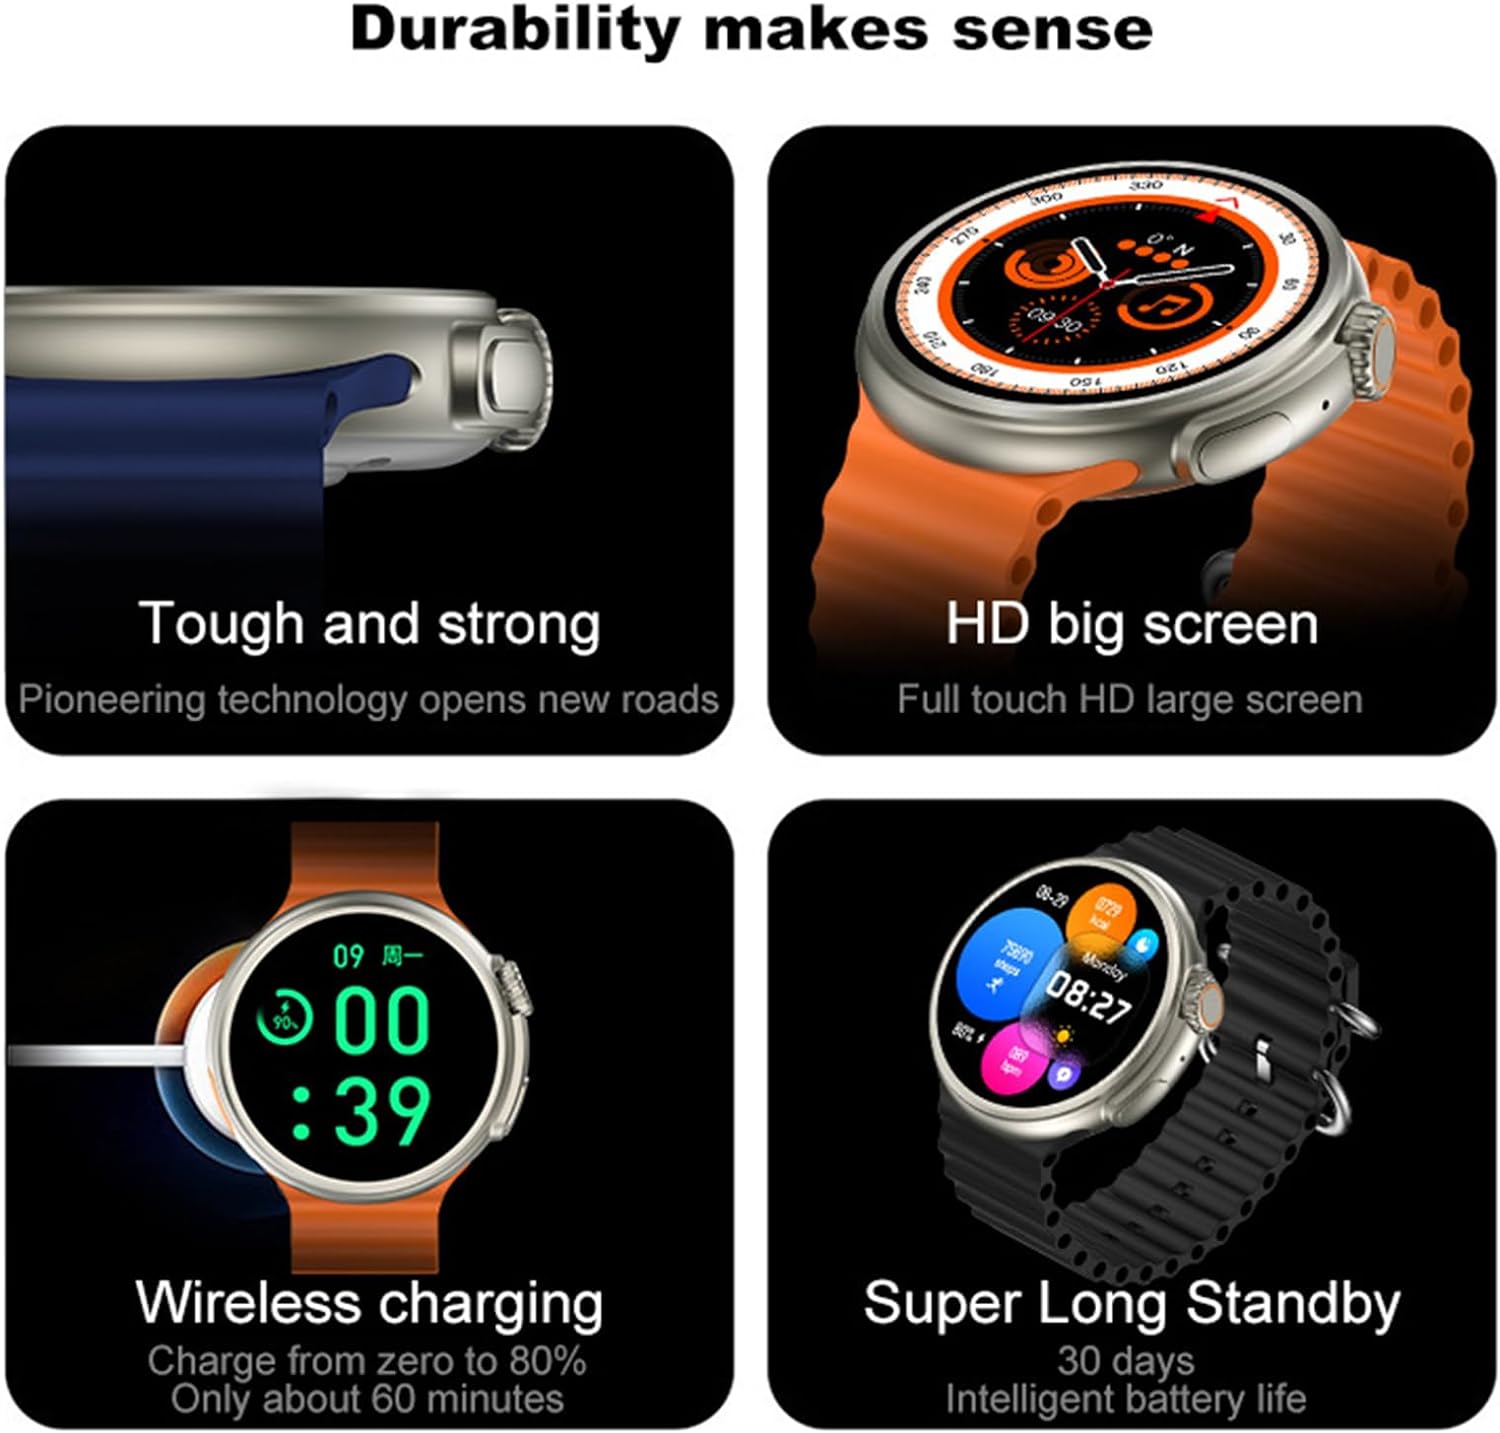 Z78 Ultra Smart Watch